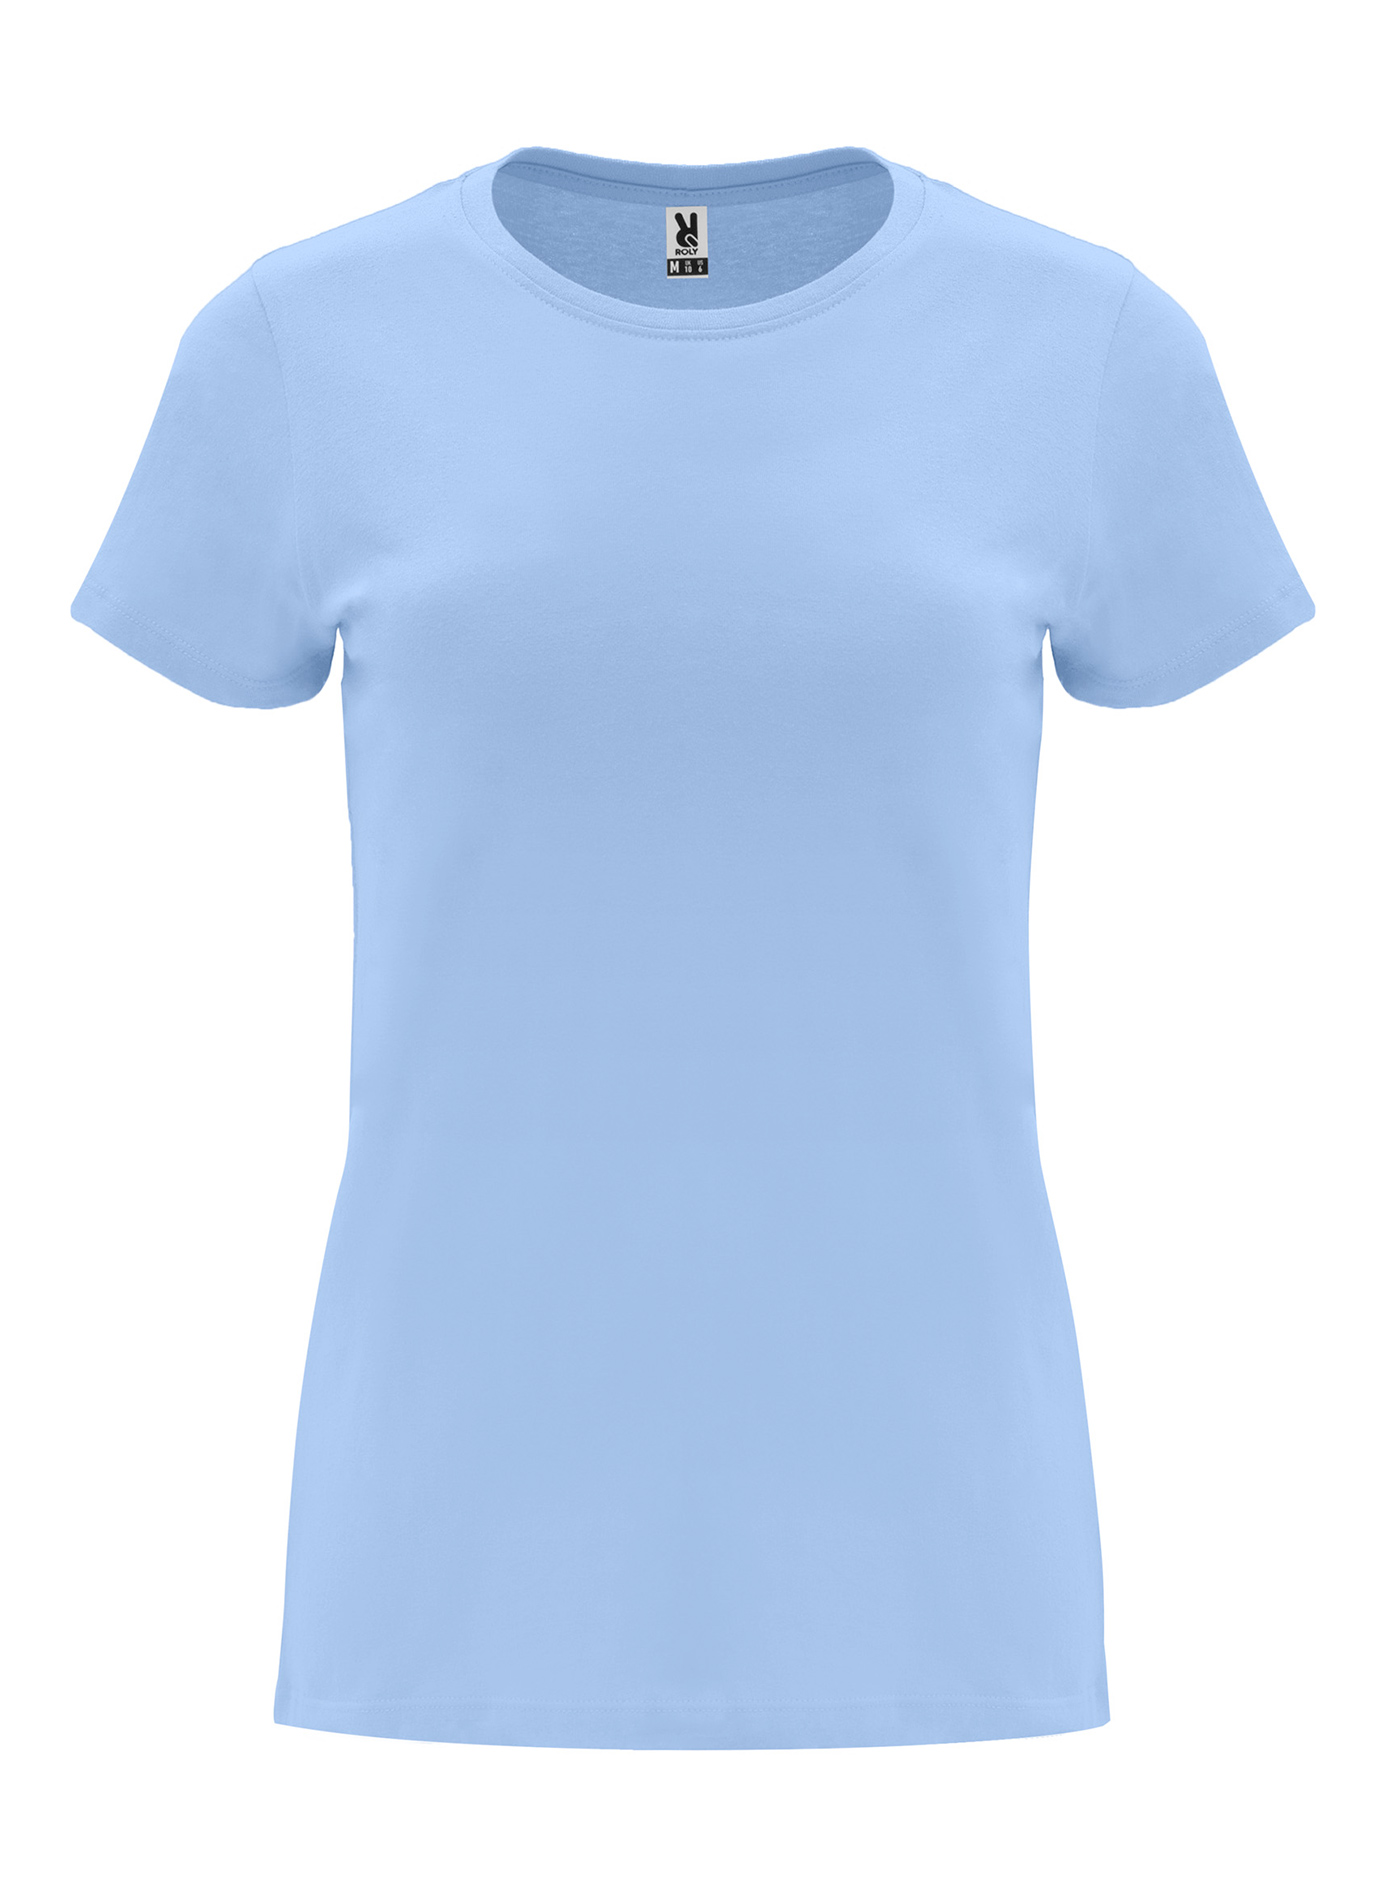 Dámské tričko Roly Capri - Blankytně modrá L